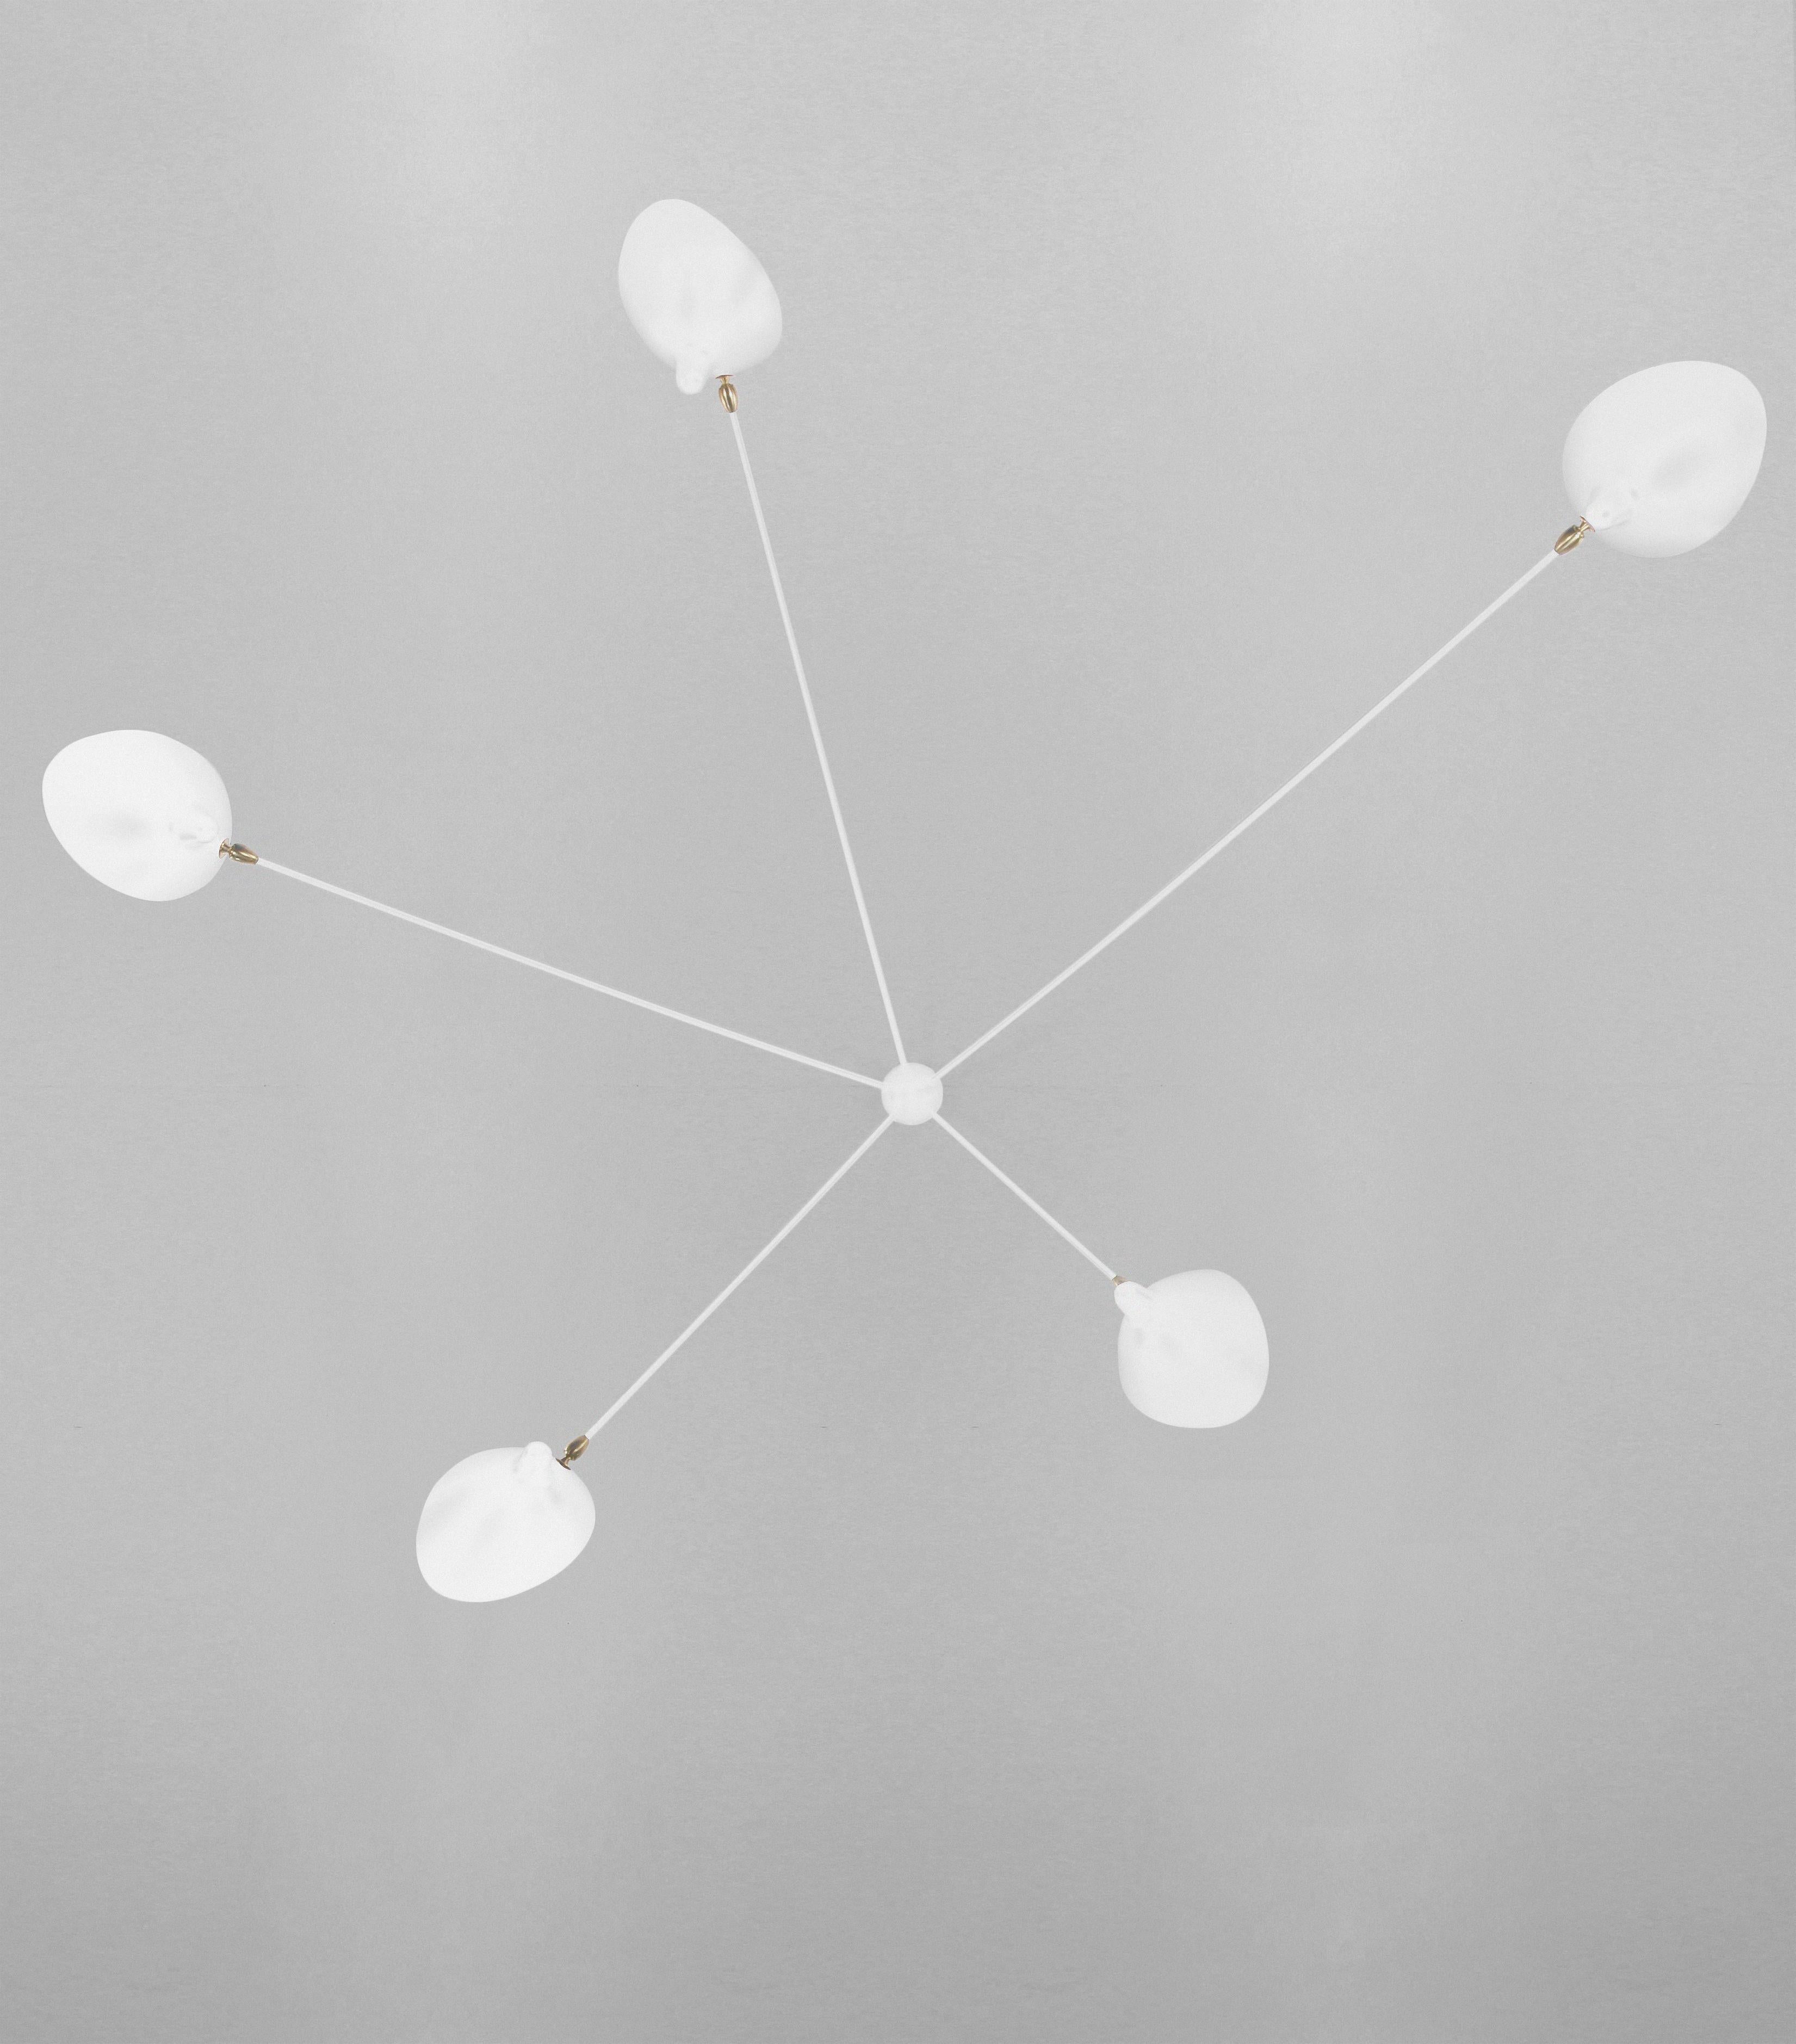 Decken-Wandleuchte Modell 'five fixed arms spider wall lamp', entworfen von Serge Mouille im Jahr 1953.

Hergestellt von Editions Serge Mouille in Frankreich. Die Herstellung der Lampen, Wandleuchten und Stehlampen erfolgt in handwerklicher Weise